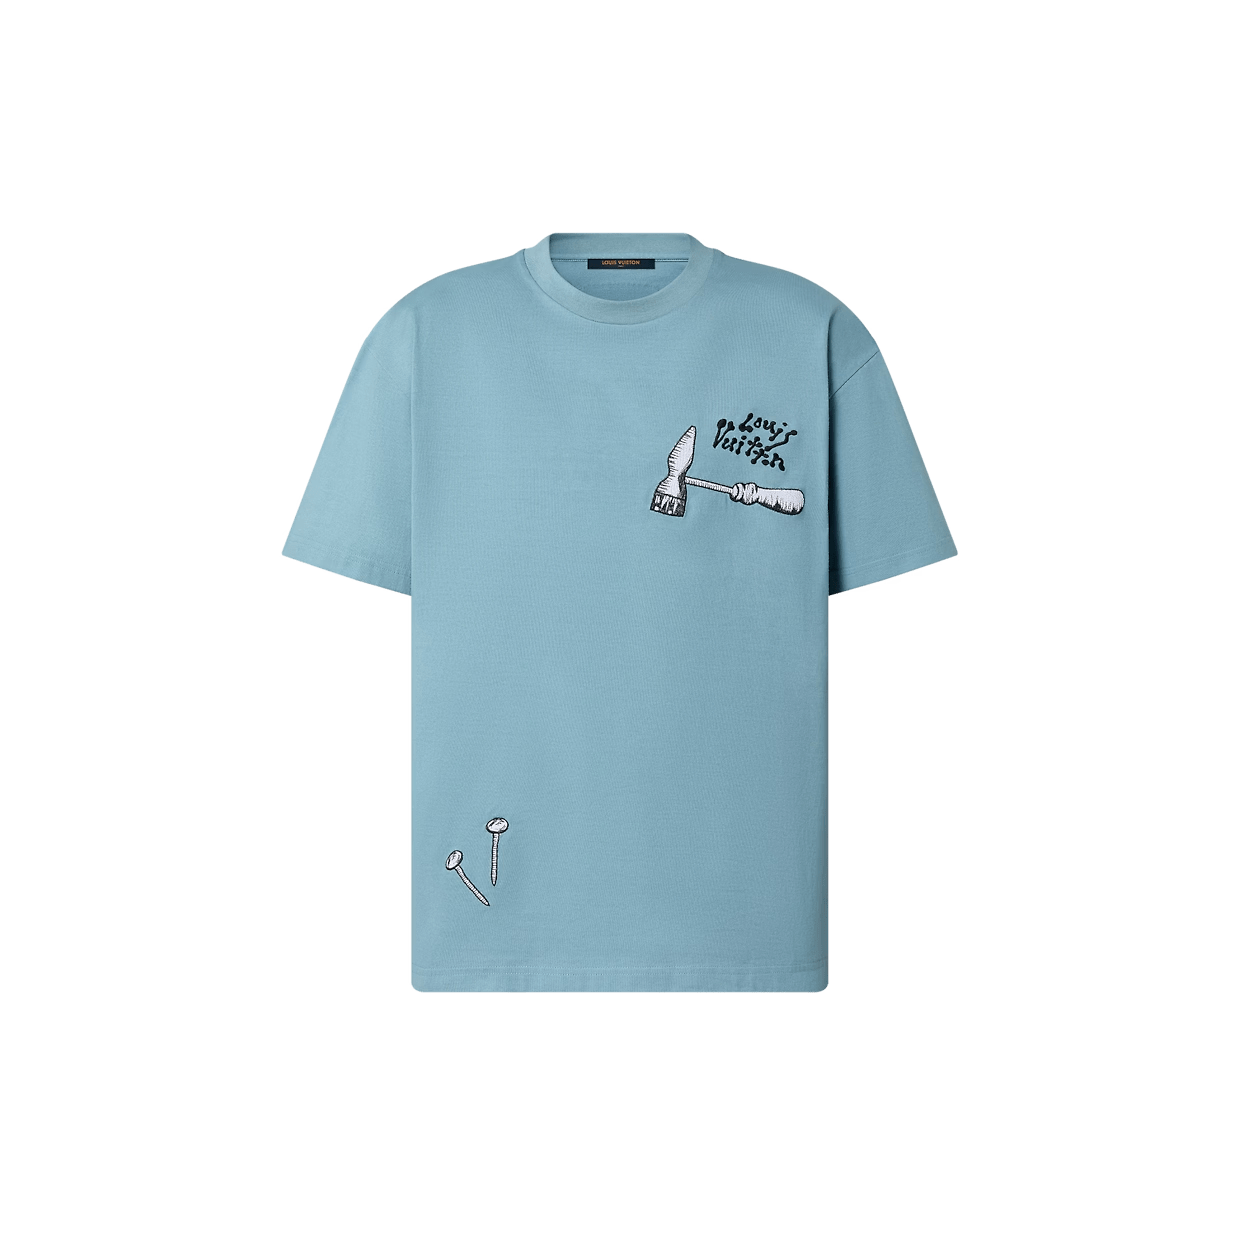 Louis Vuitton FRAGMENT T-Shirt Tops Men L Monogram Embroidery